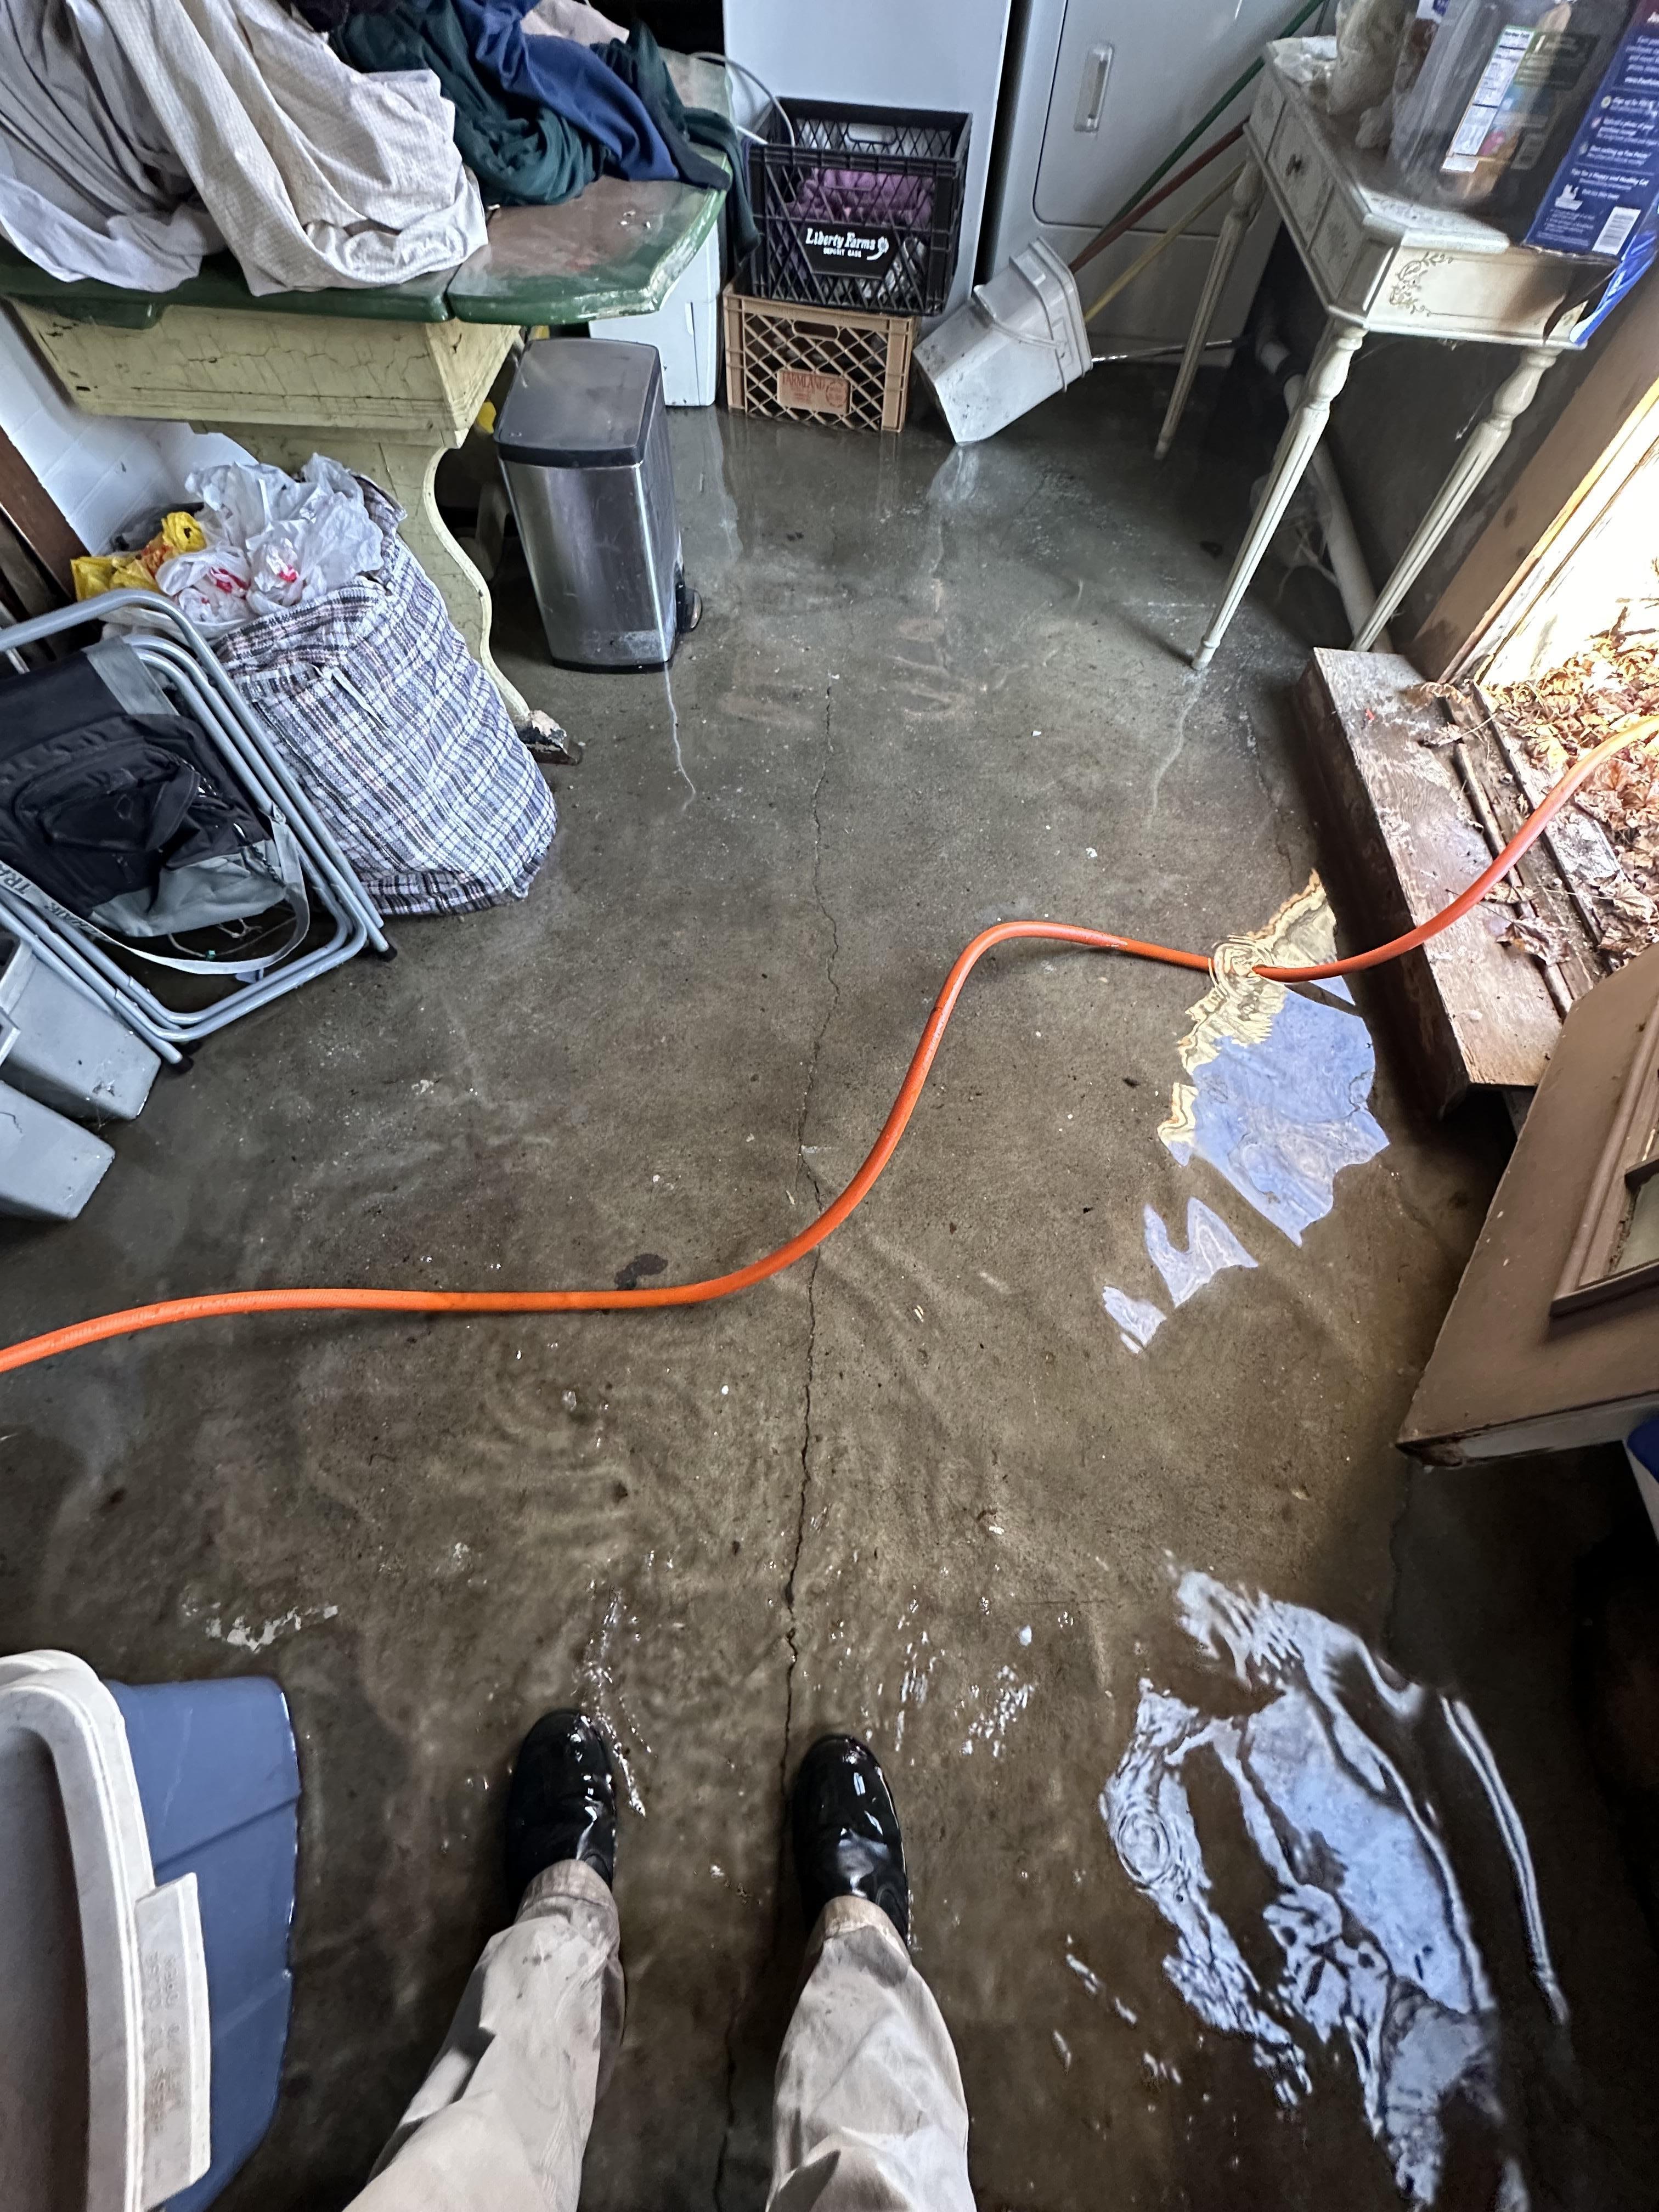 Flood in basement